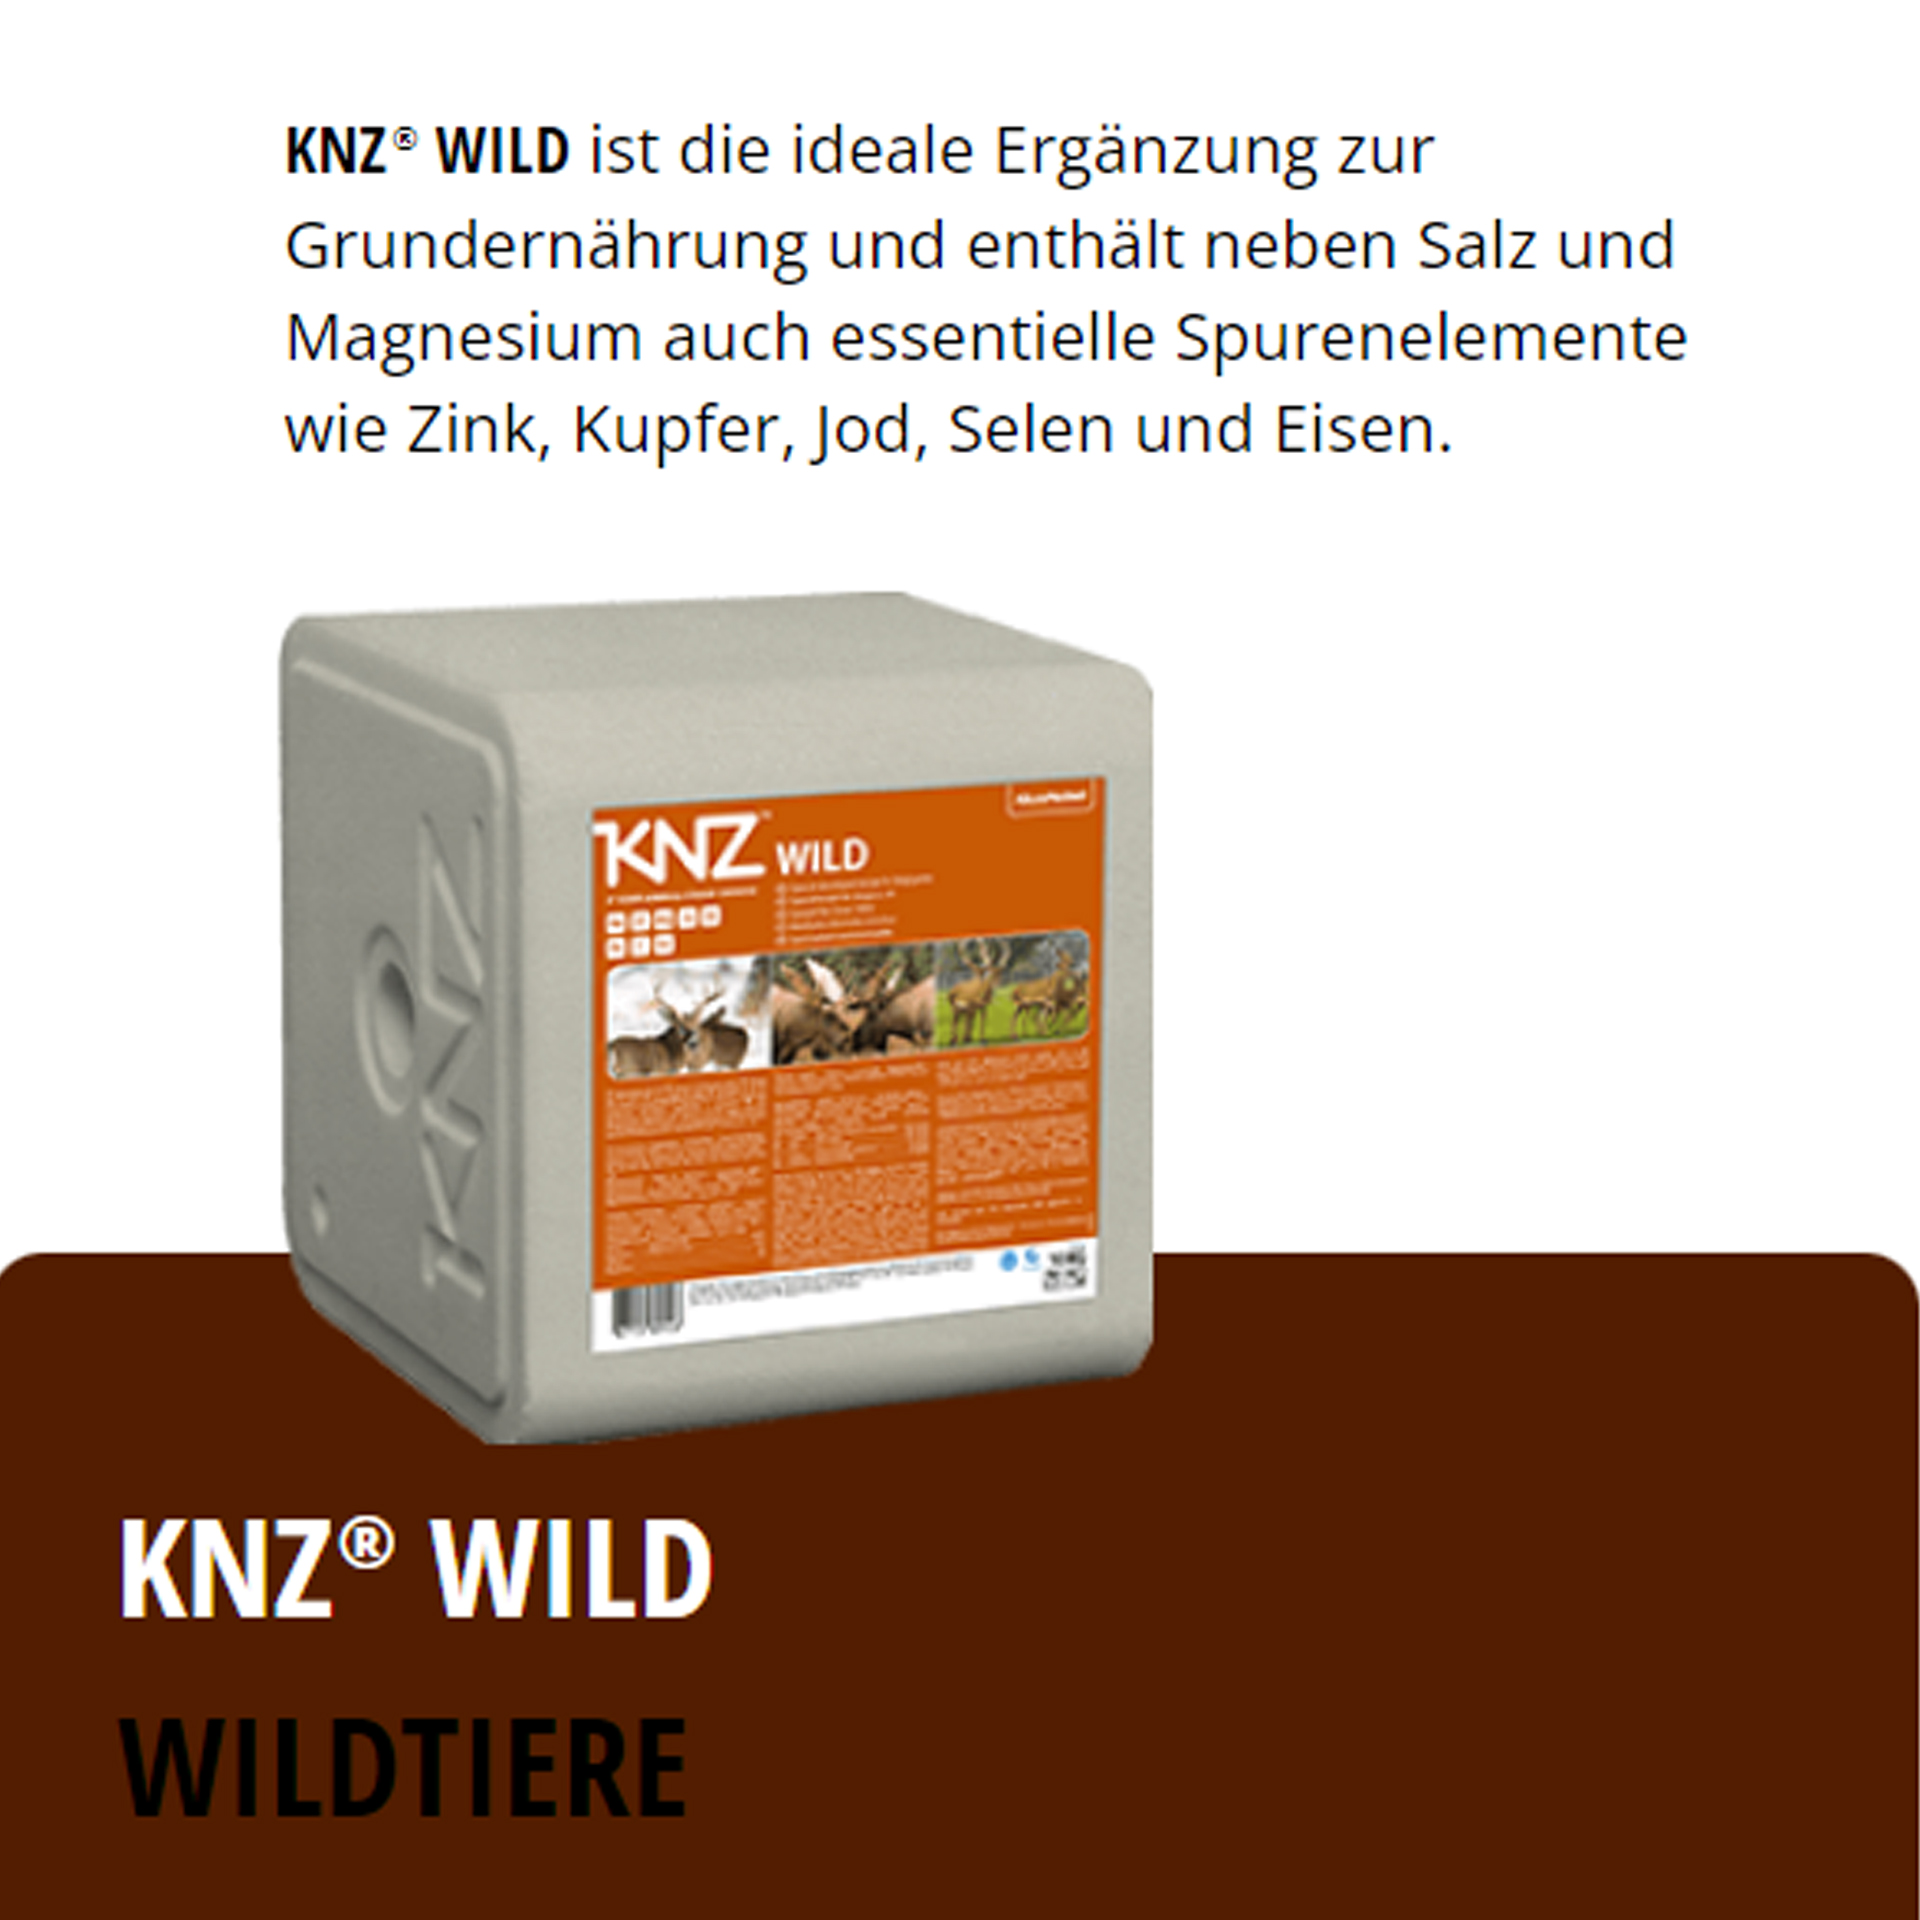 KNZ Wild 20 kg Salzlecksteine Wildtiere